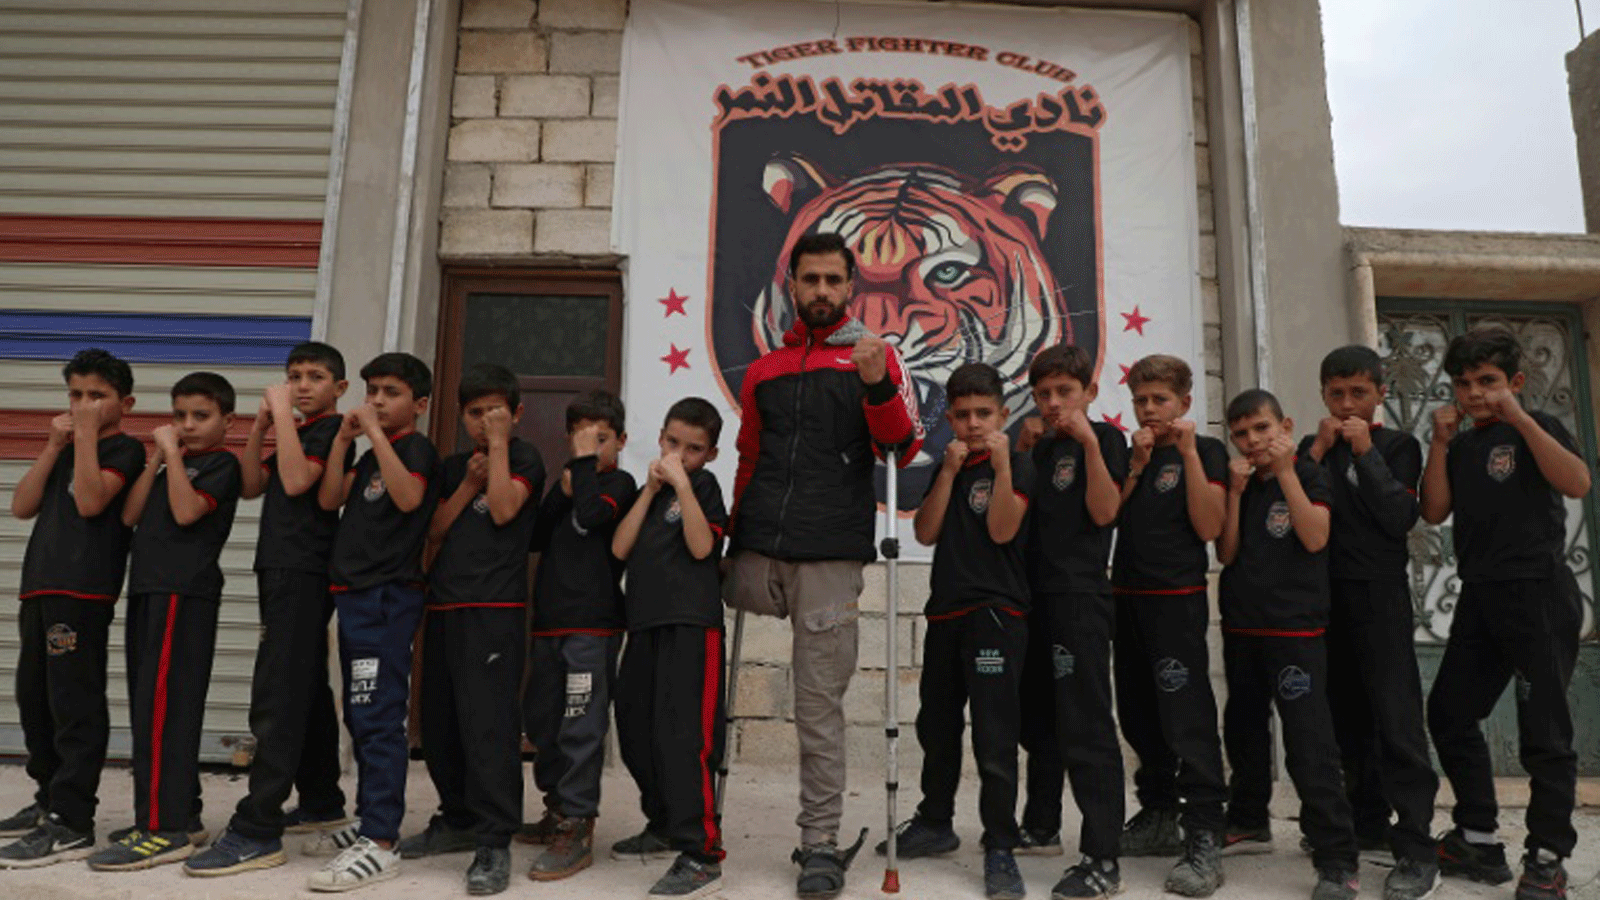 فاضل عثمان أمام شارة نادي التدريب مع الأطفال 